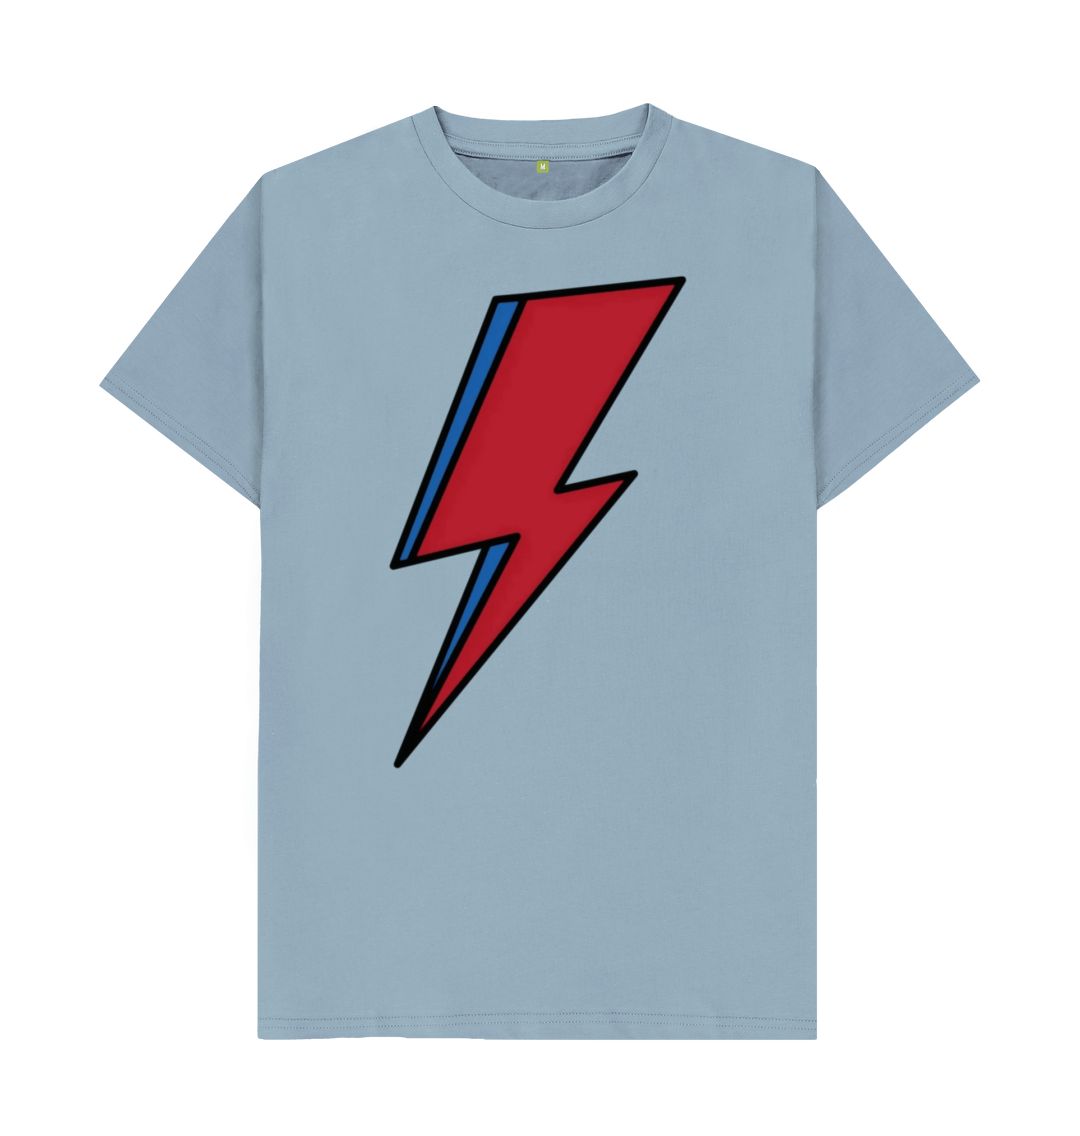 Stone Blue Lightning Bolt Men's T-Shirt